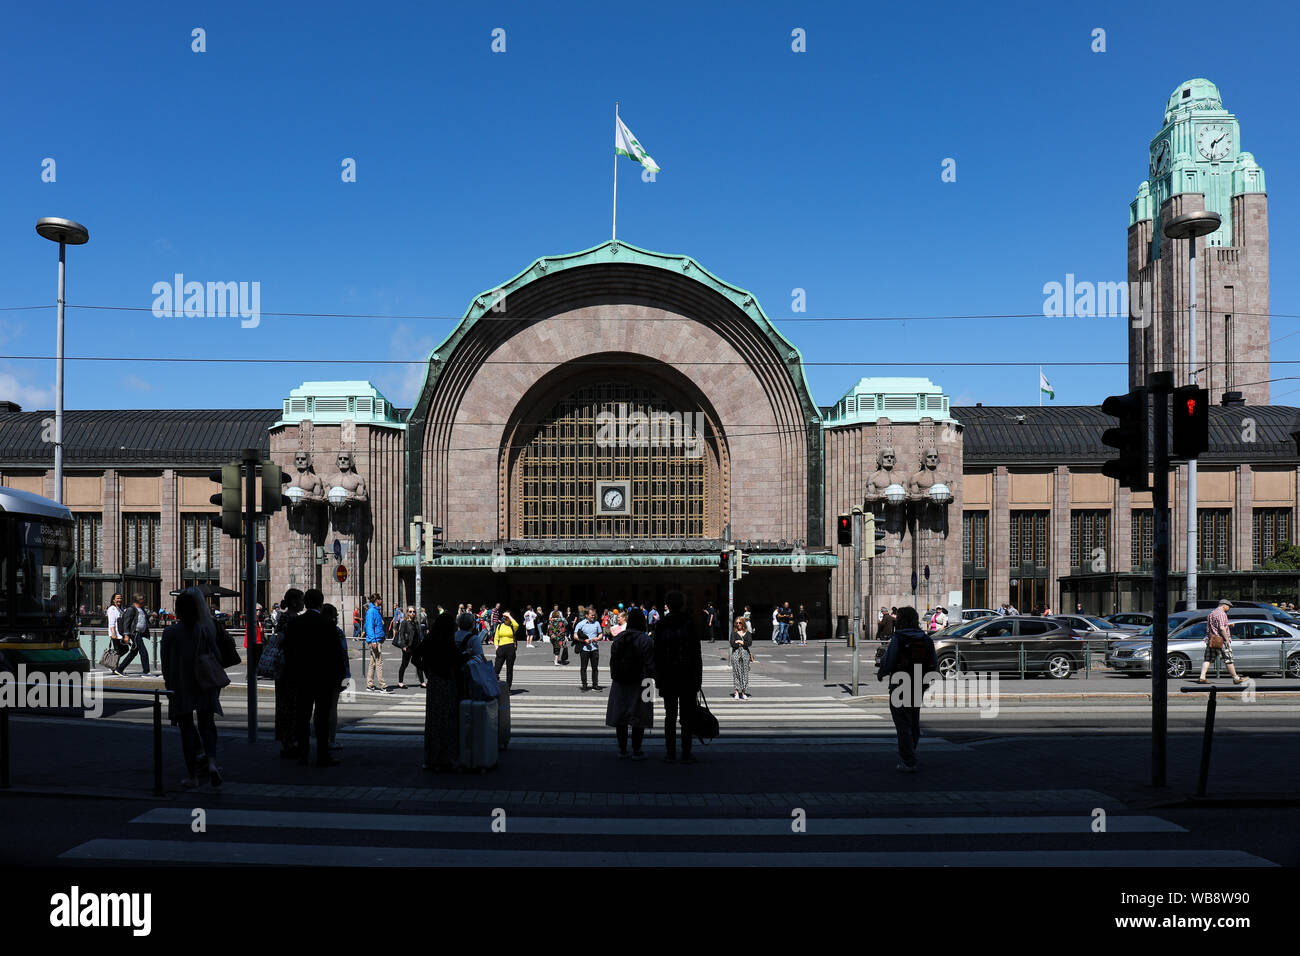 L'entrée principale et le clocher de la gare centrale, conçus par Eliel Saarinen, à Helsinki, en Finlande Banque D'Images